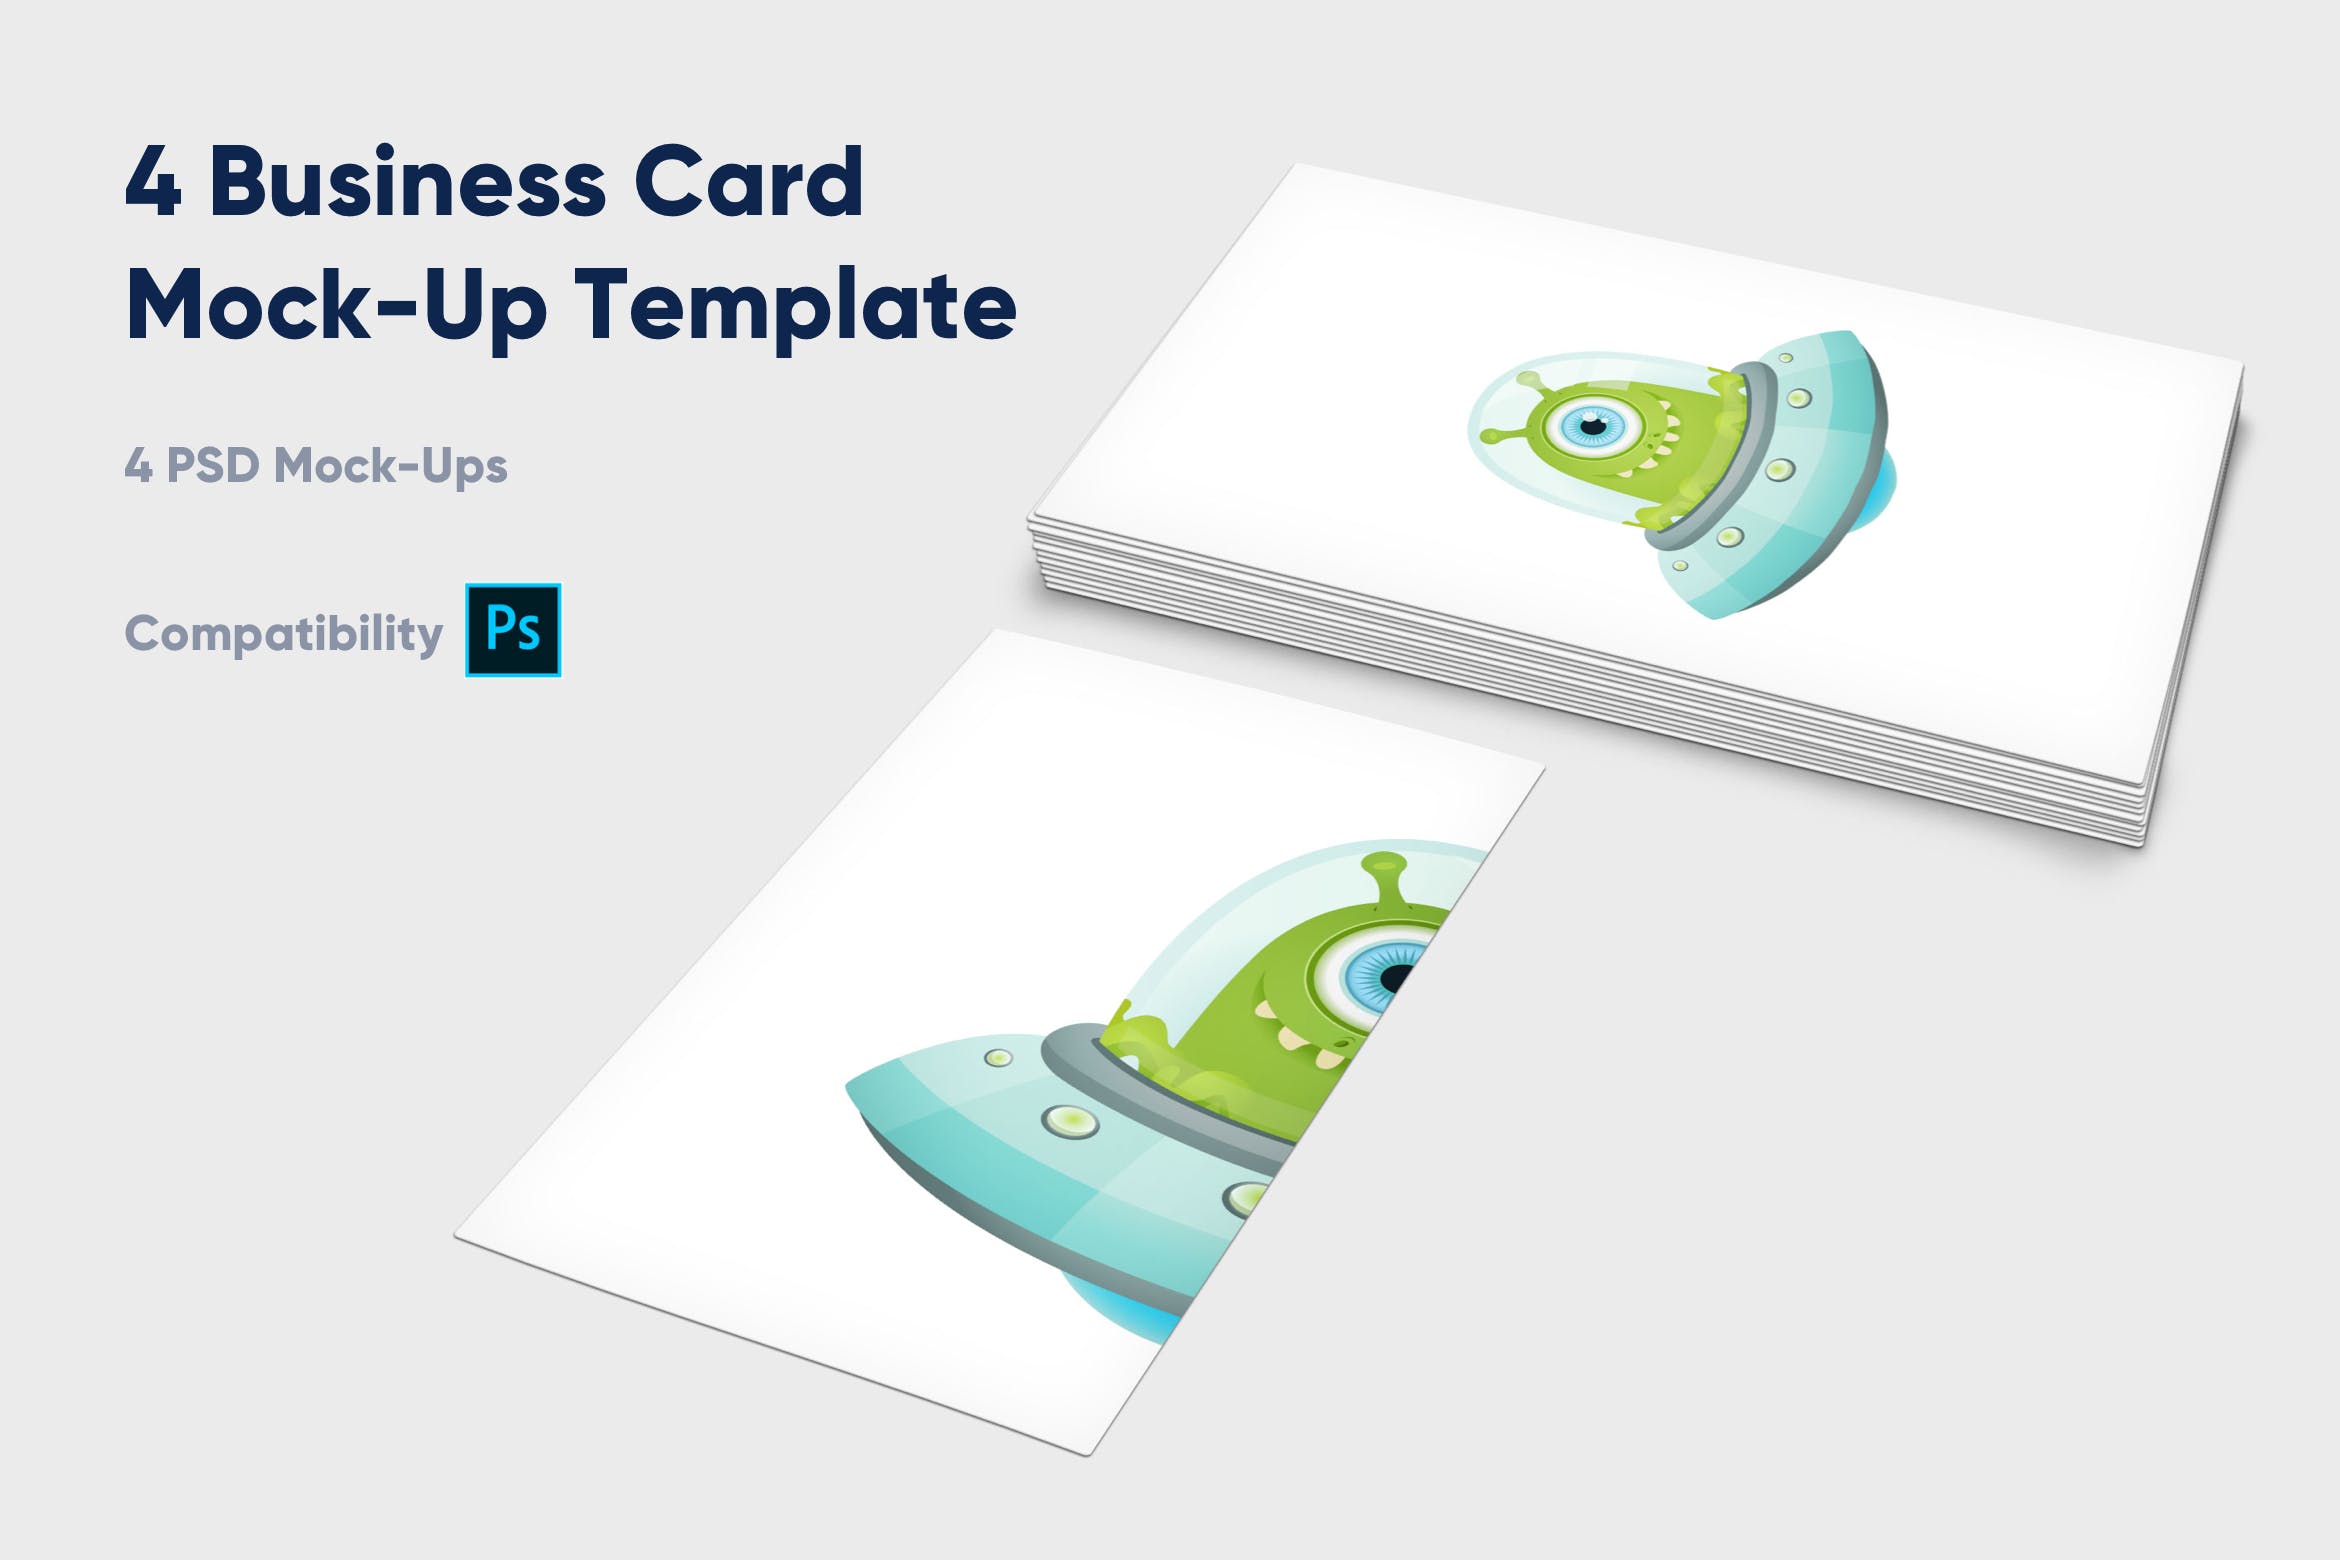 企业名片设计效果图展示样机素材库精选模板 4 Business Card Mock-Up Template插图